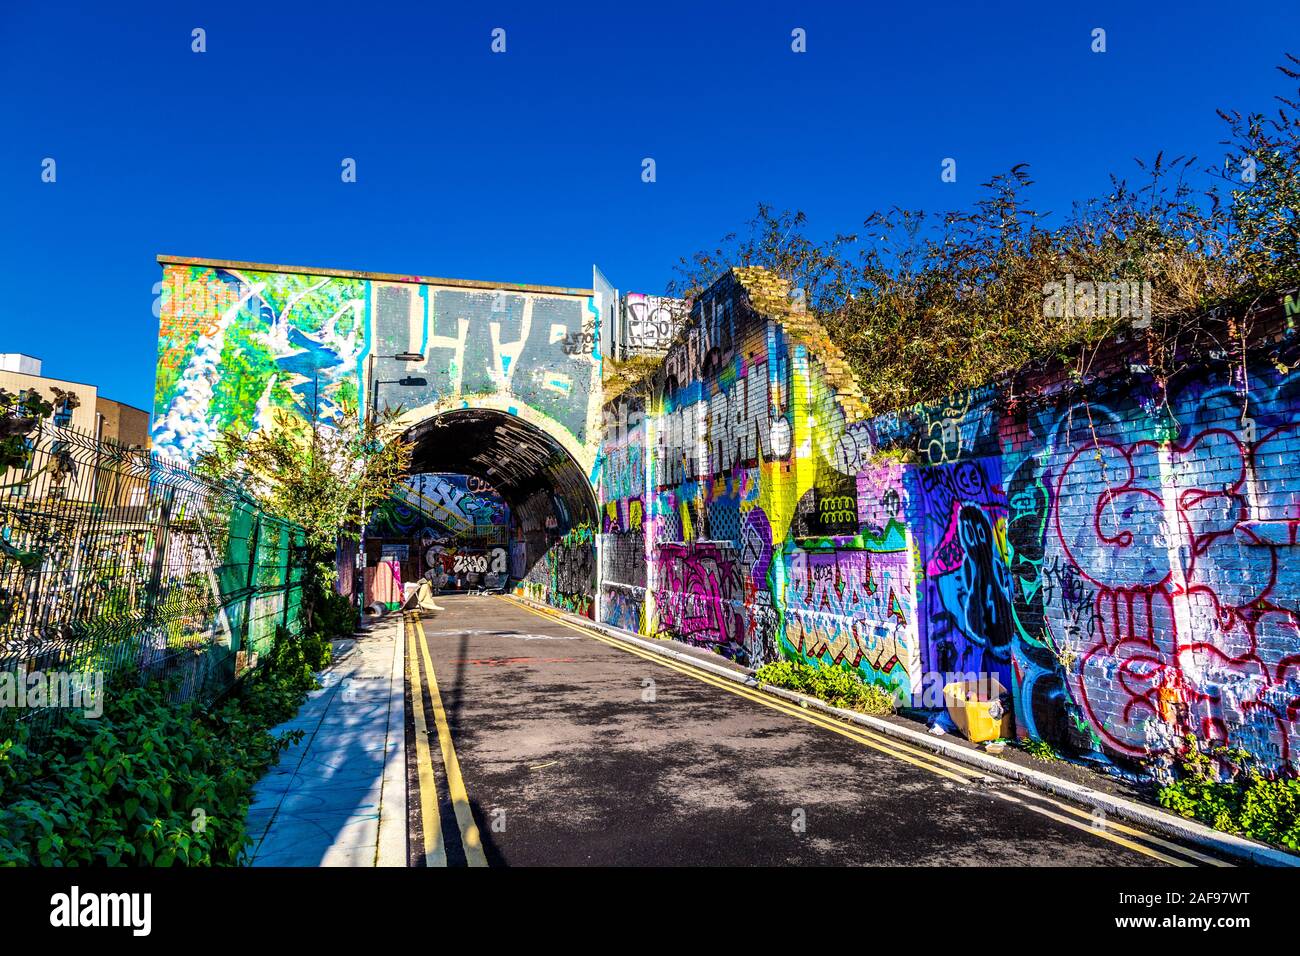 Pedley Street Arch couverts de peintures murales, graffiti et street art, London, UK Banque D'Images